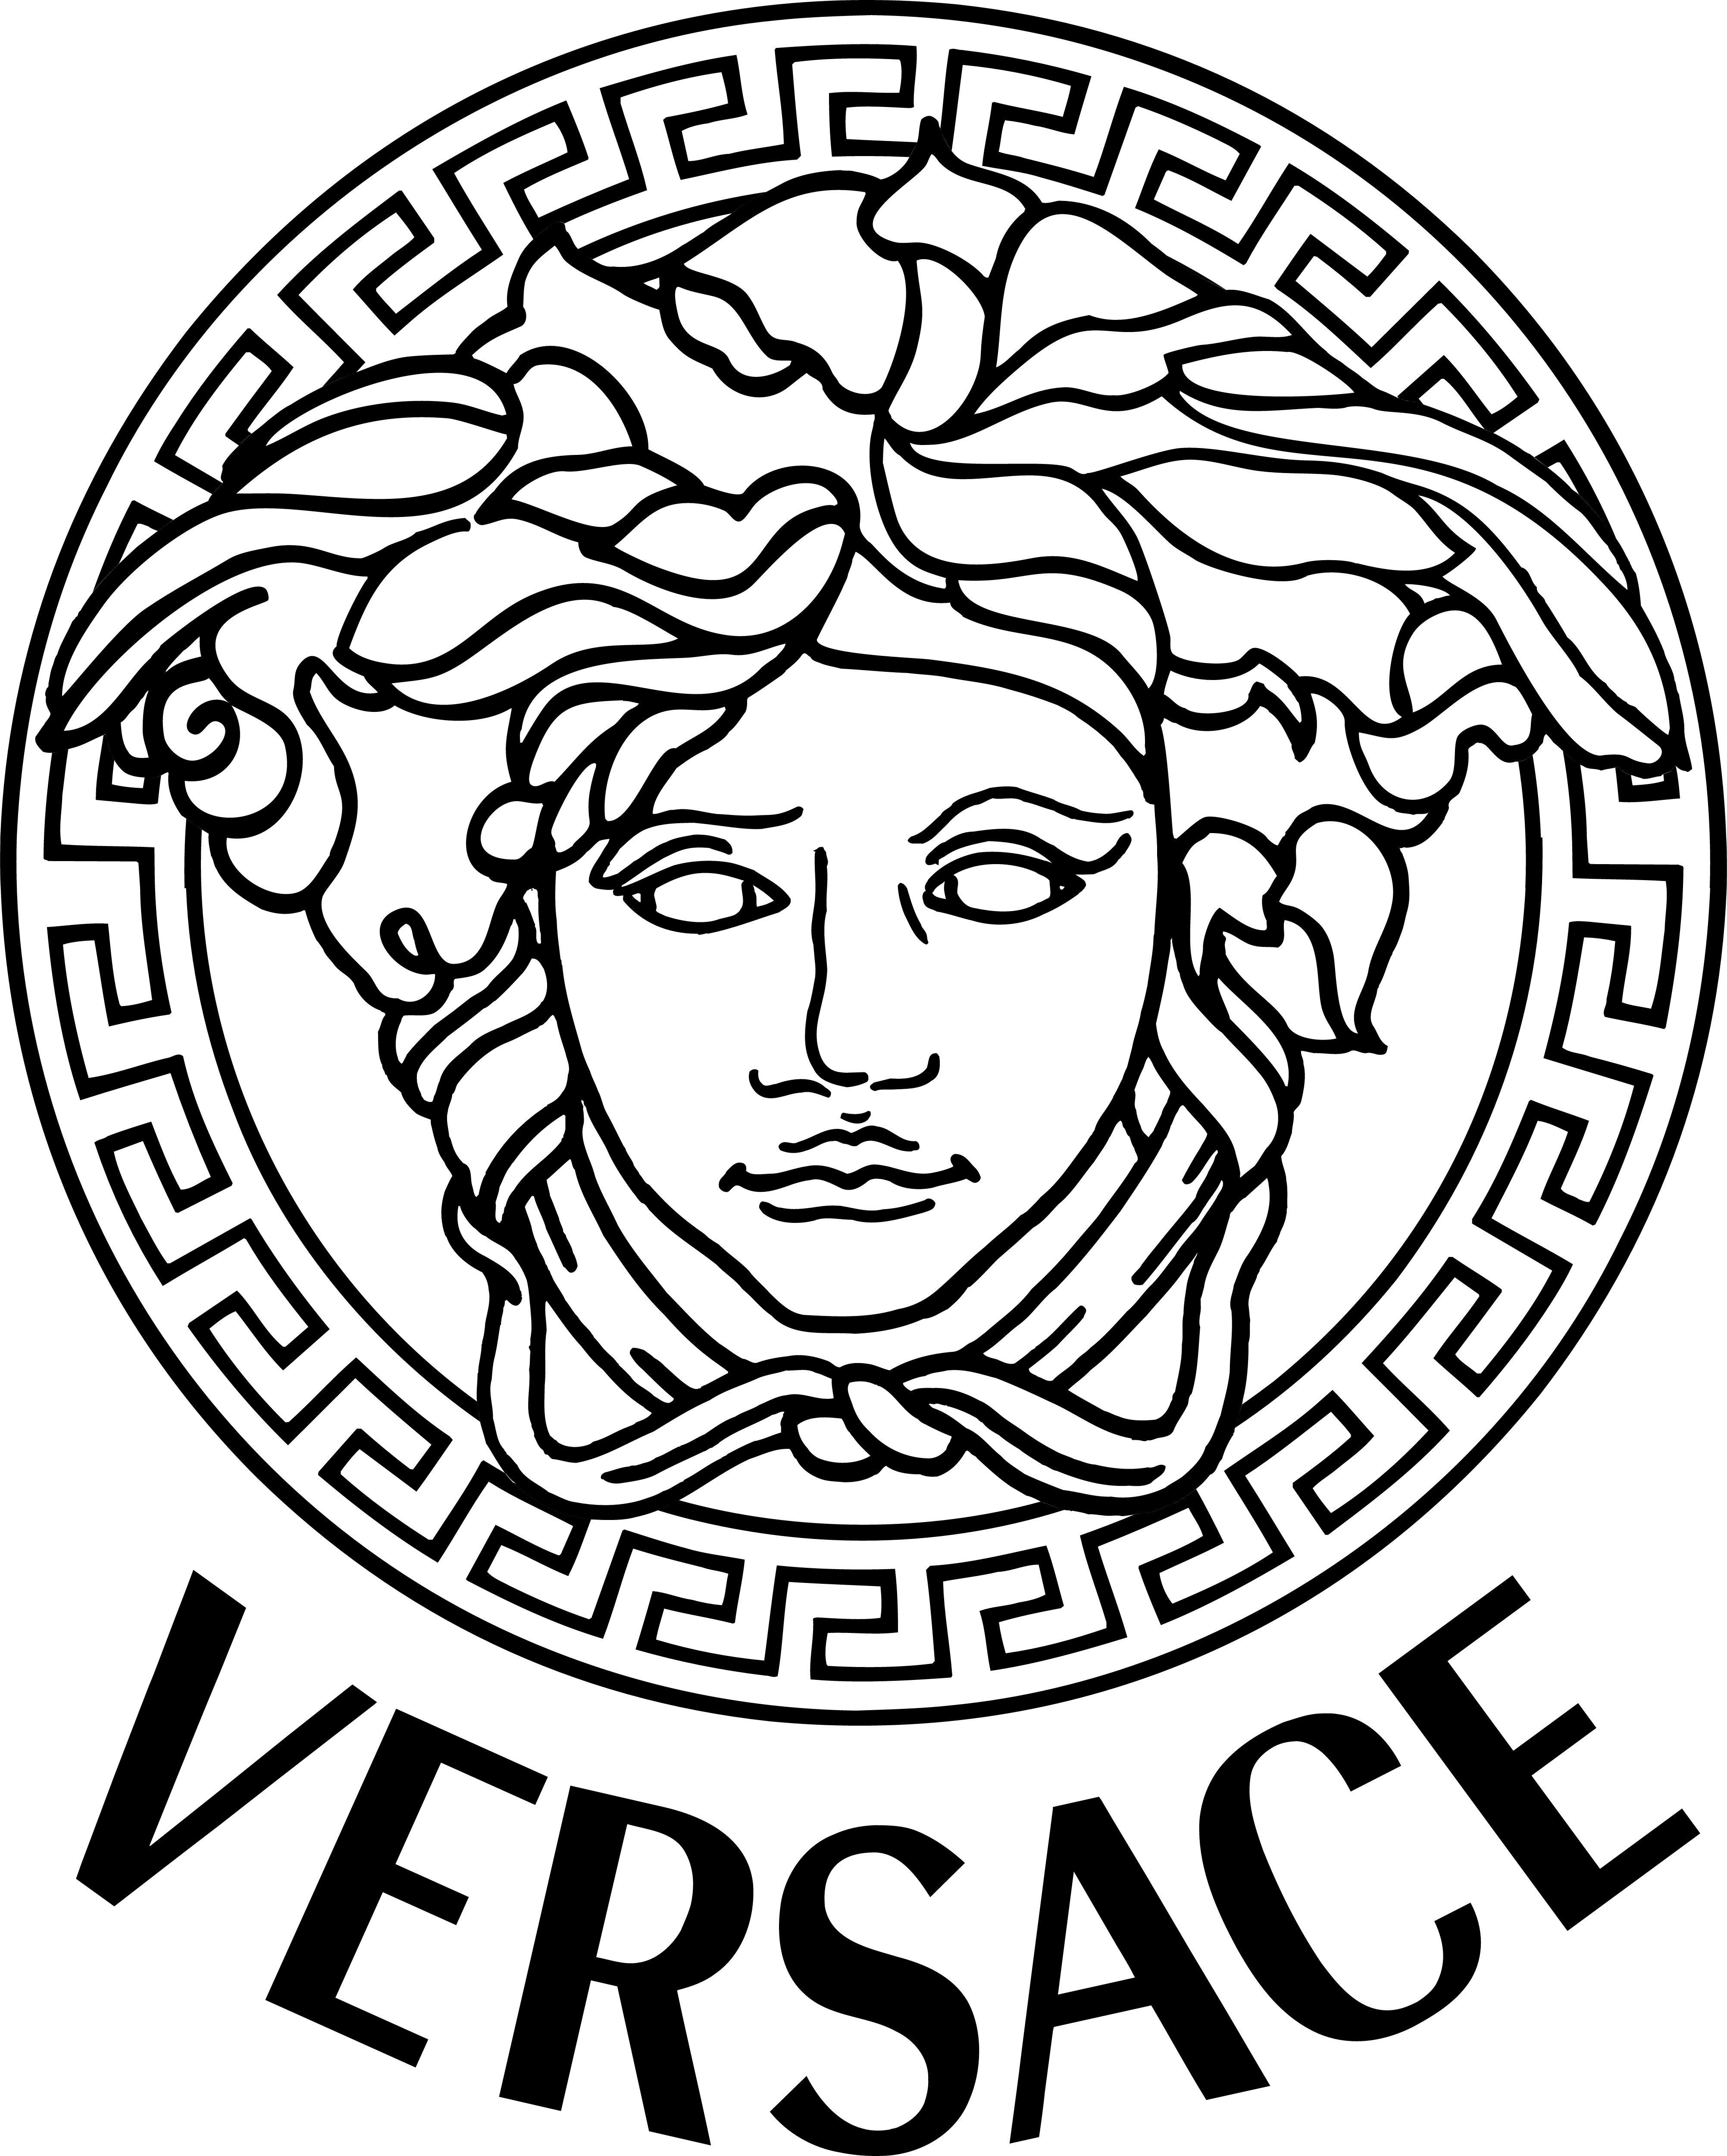 Versace Logo Transparent Png 